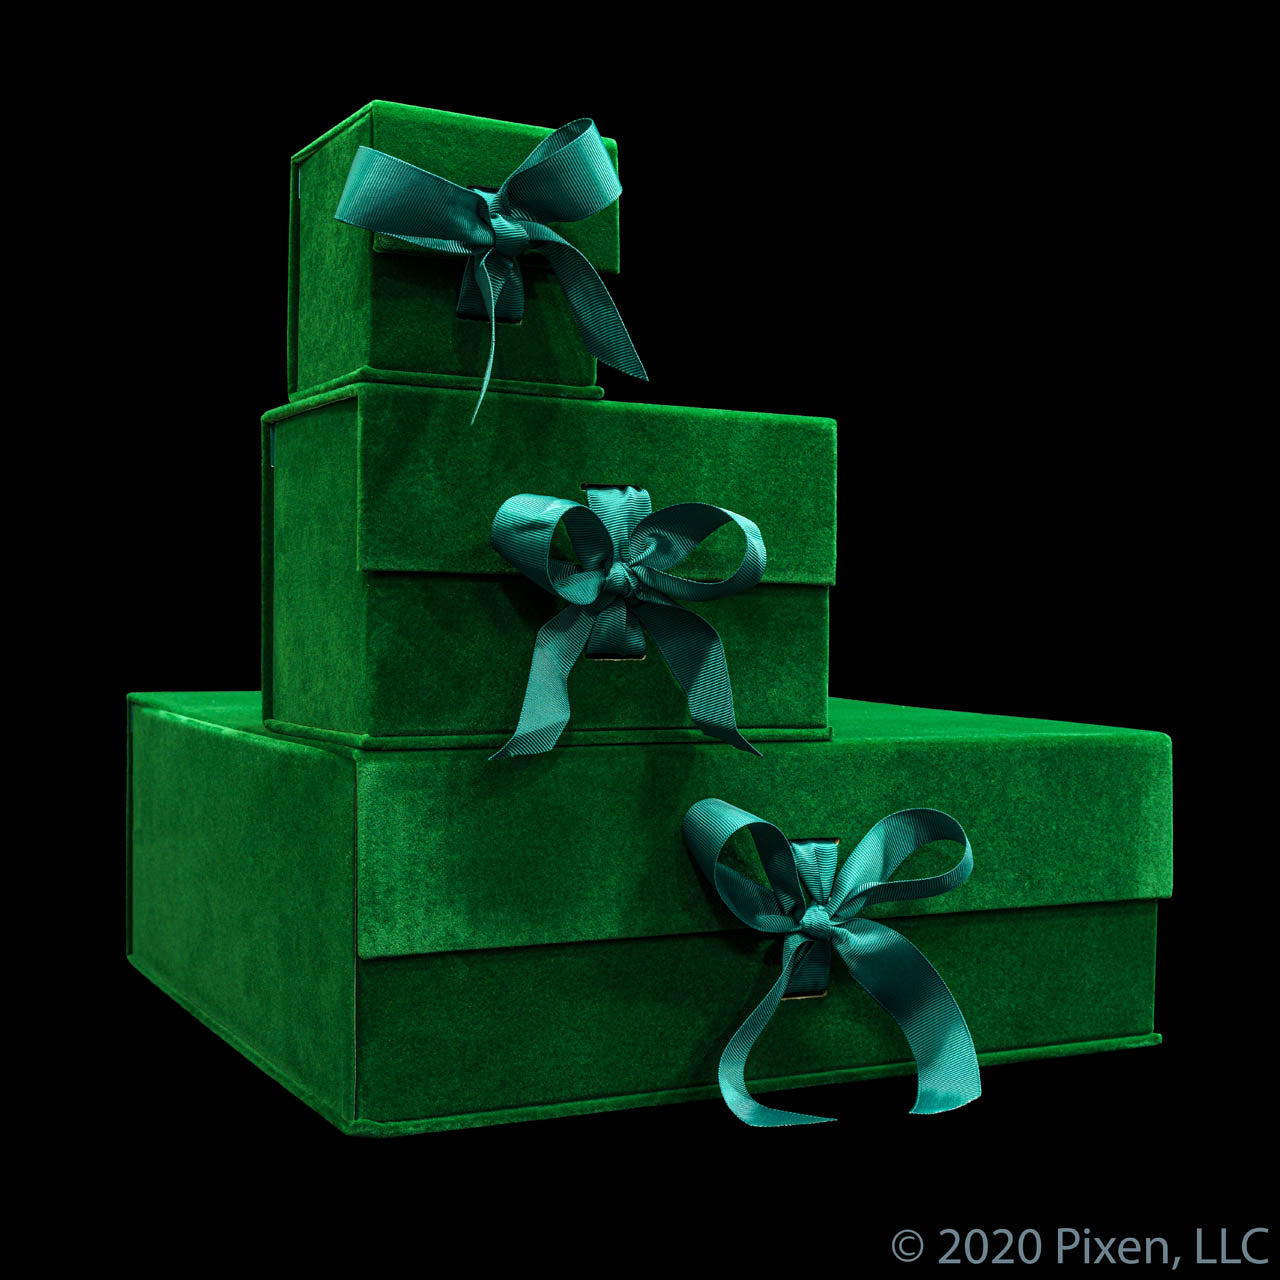 Pixen Green Velvet Christmas Gift Box (S, M, L)